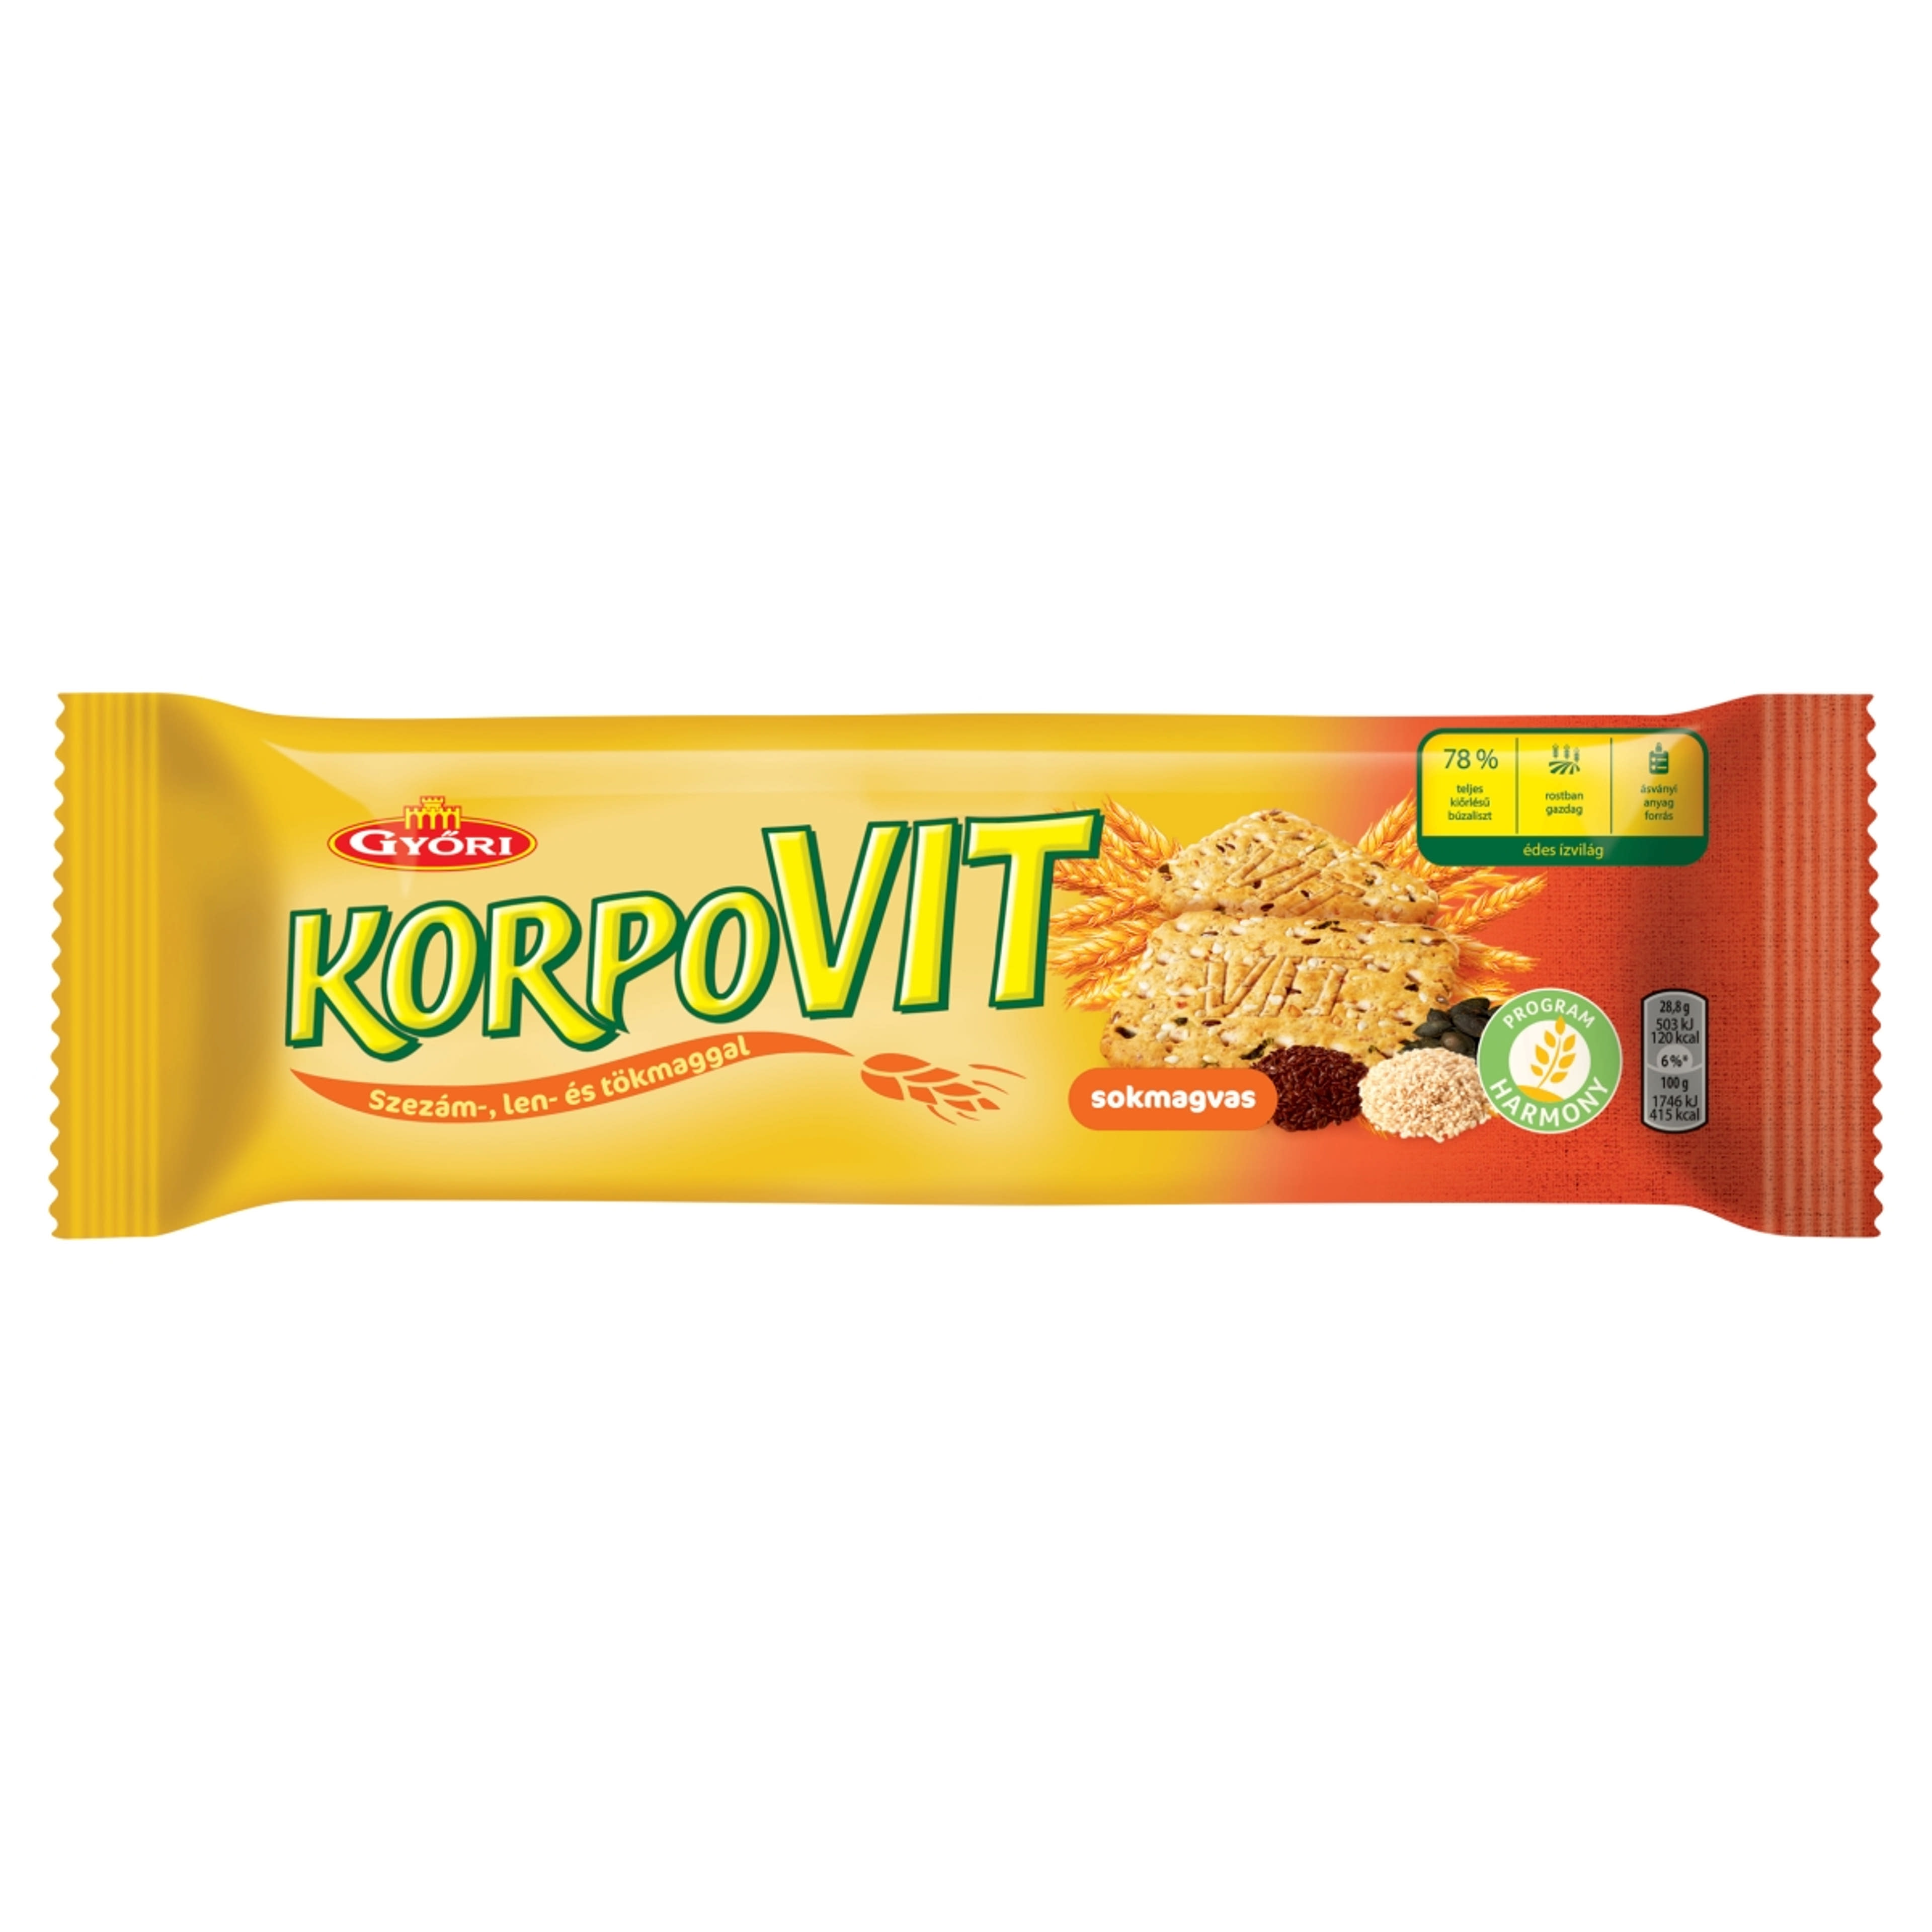 Győri sokmagvas korpovit keksz - 174 g